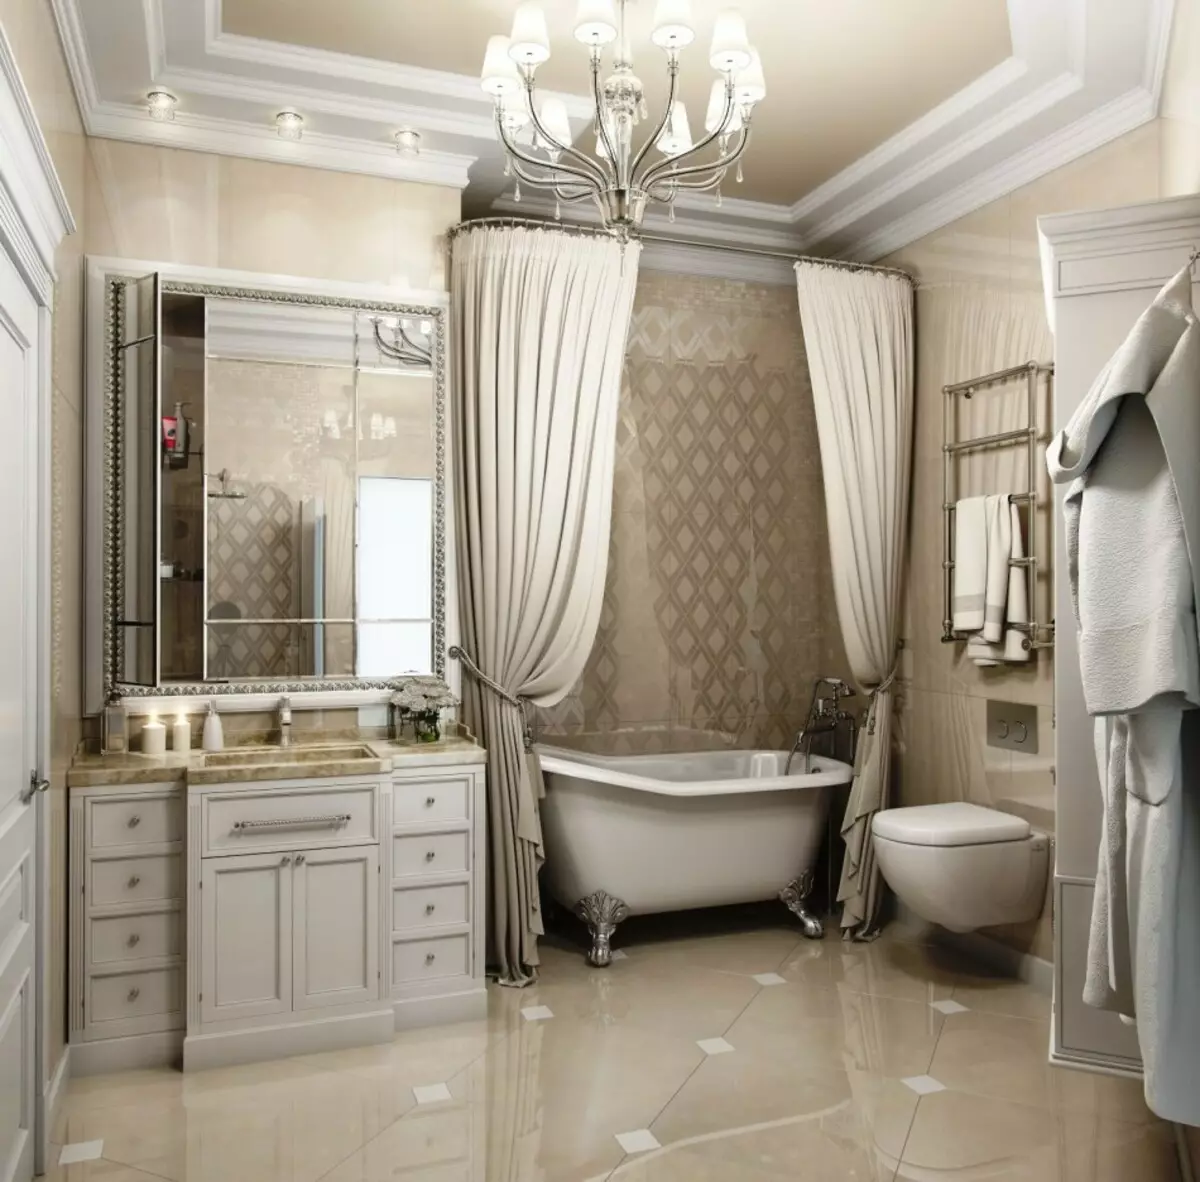 חדר אמבטיה לבן (84 תמונות): עיצוב חדר גוונים לבנים עם מבטאים בהירים. עיצוב פנים מודרני רעיונות חדר אמבטיה לבן קטן עם מוסיף 10191_68